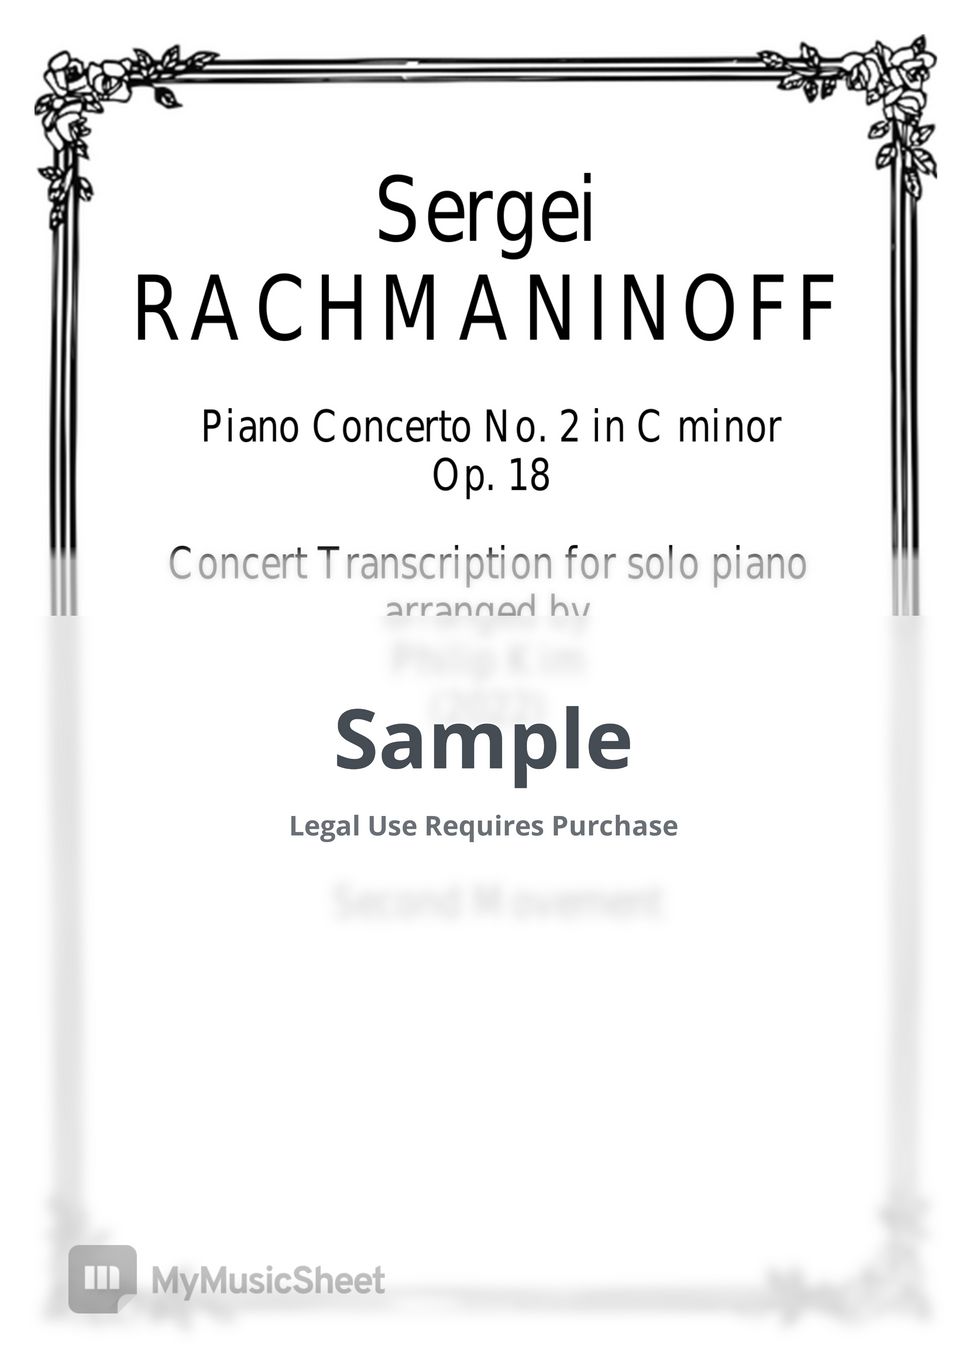 Sergei Rachmaninoff - Piano Concerto No. 2 Op. 18 Concert Transcription for Solo Piano 2nd movement (Piano Concerto No. 2 Op. 18 Concert Transcription for Solo Piano) by Philip Kim